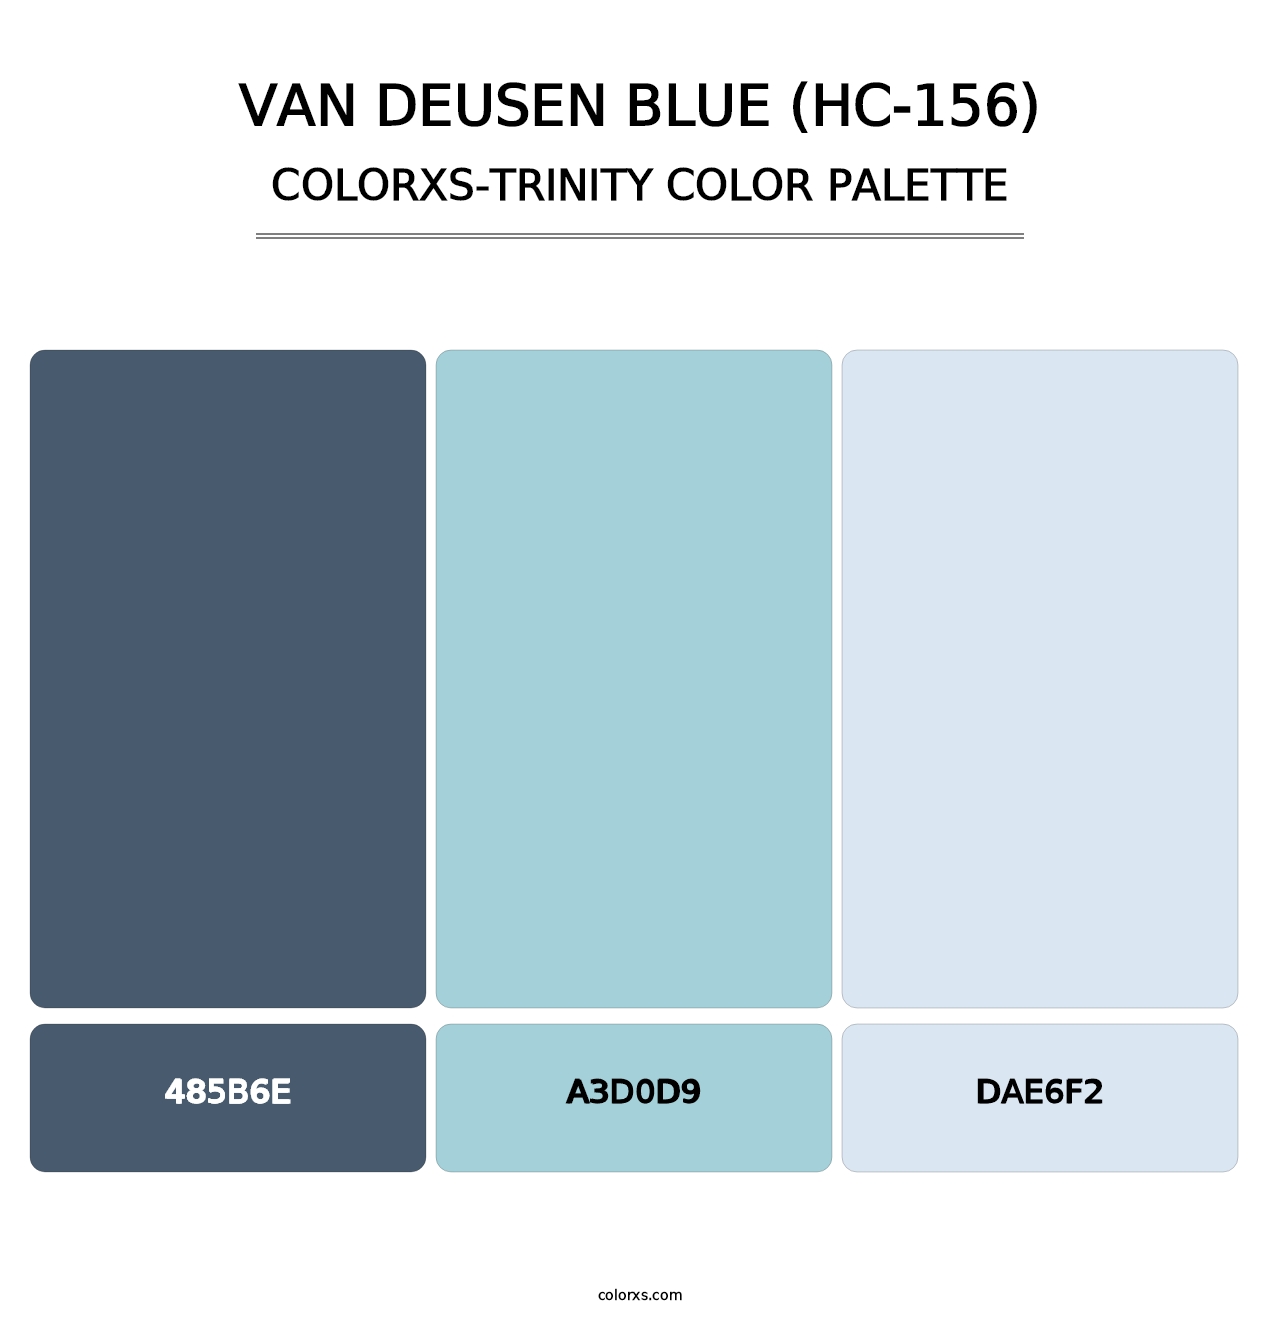 Van Deusen Blue (HC-156) - Colorxs Trinity Palette